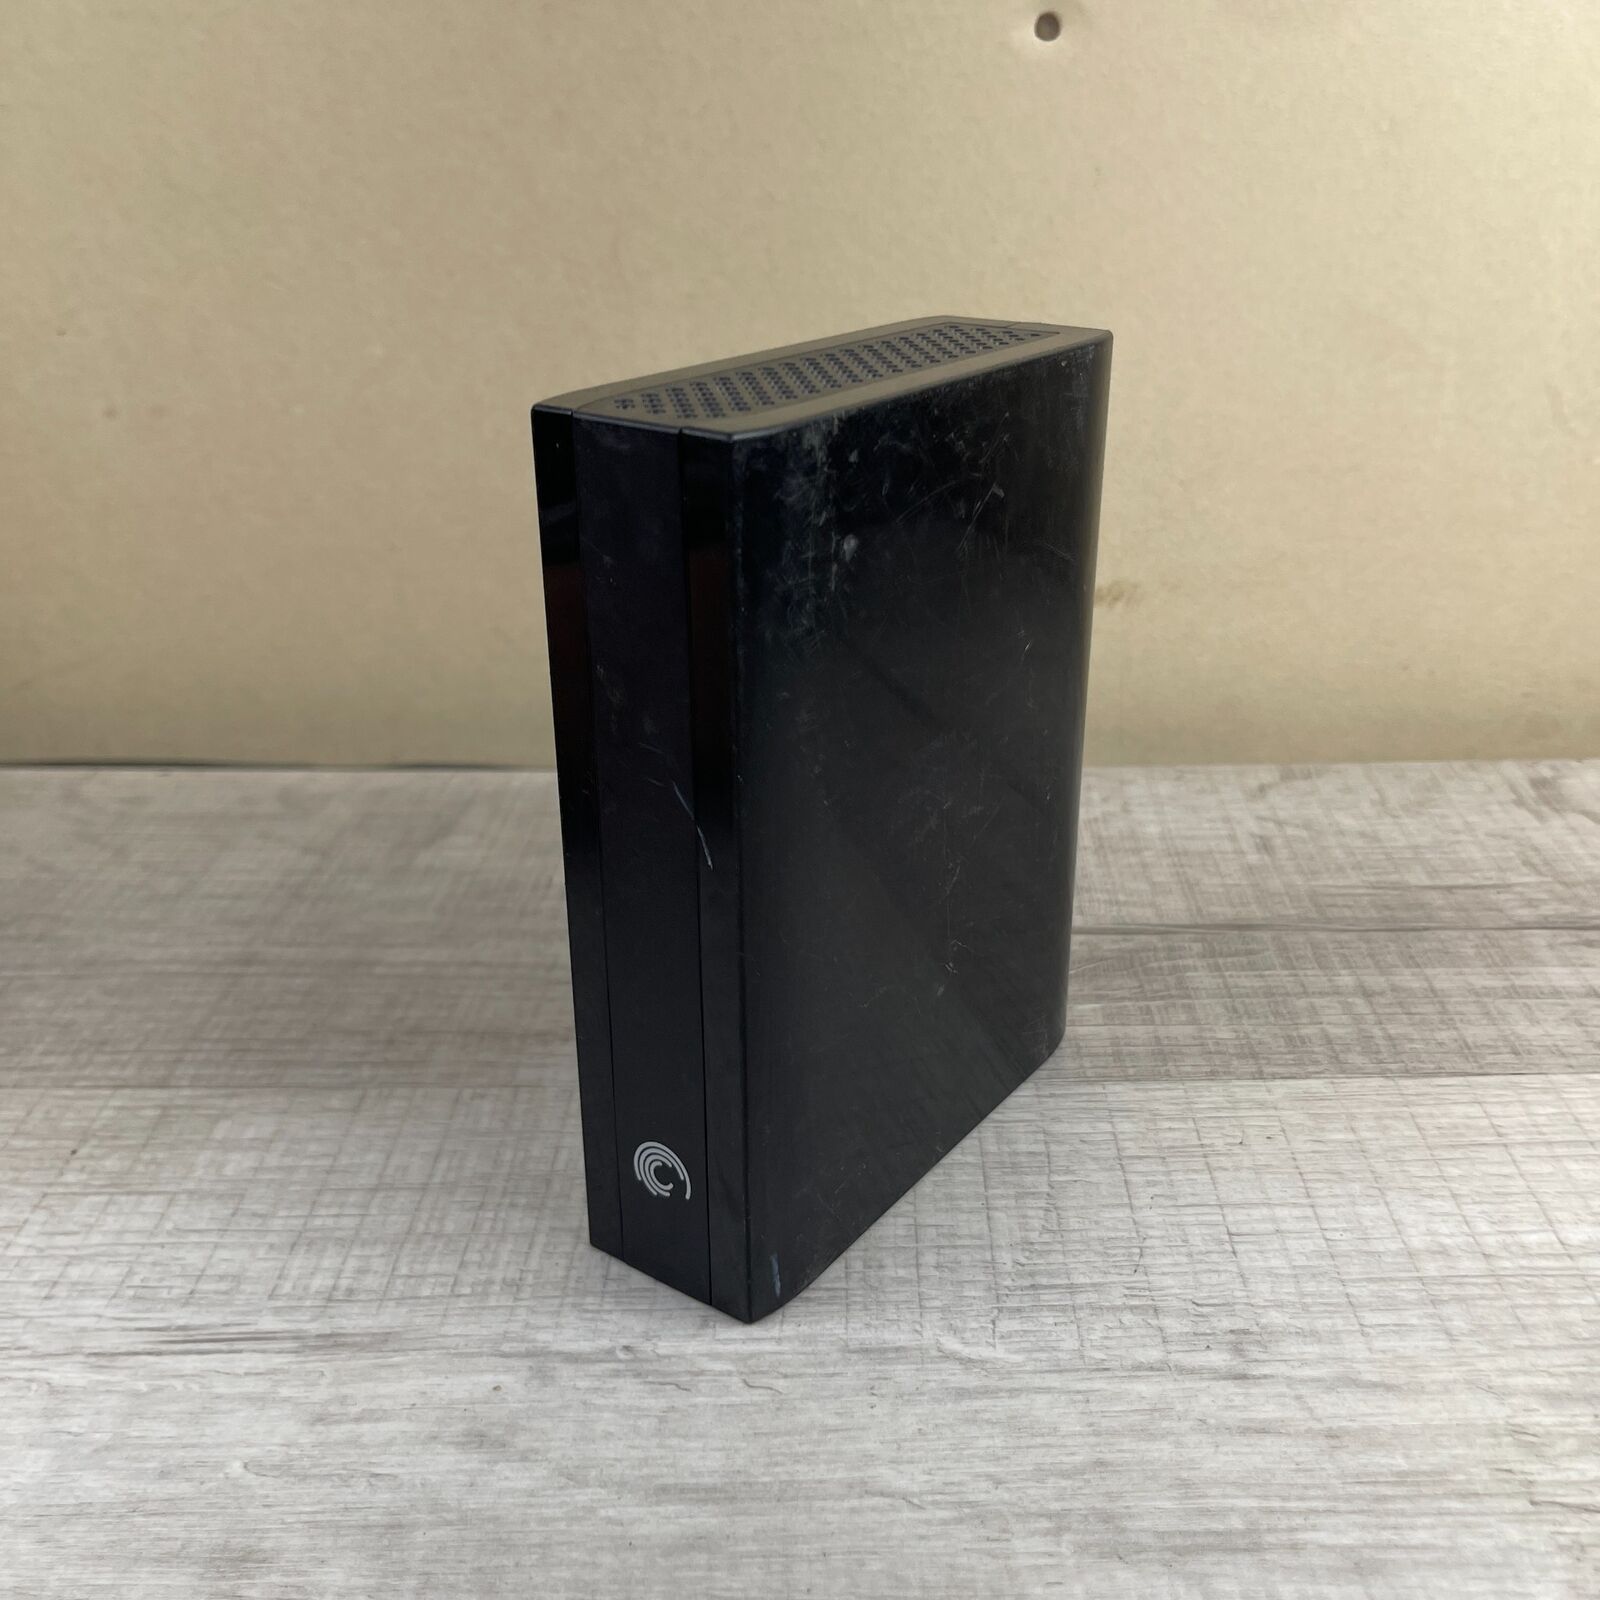 Seagate SRDOSDO Black USB 3.0 2TB Backup Plus Desktop External Hard Drive